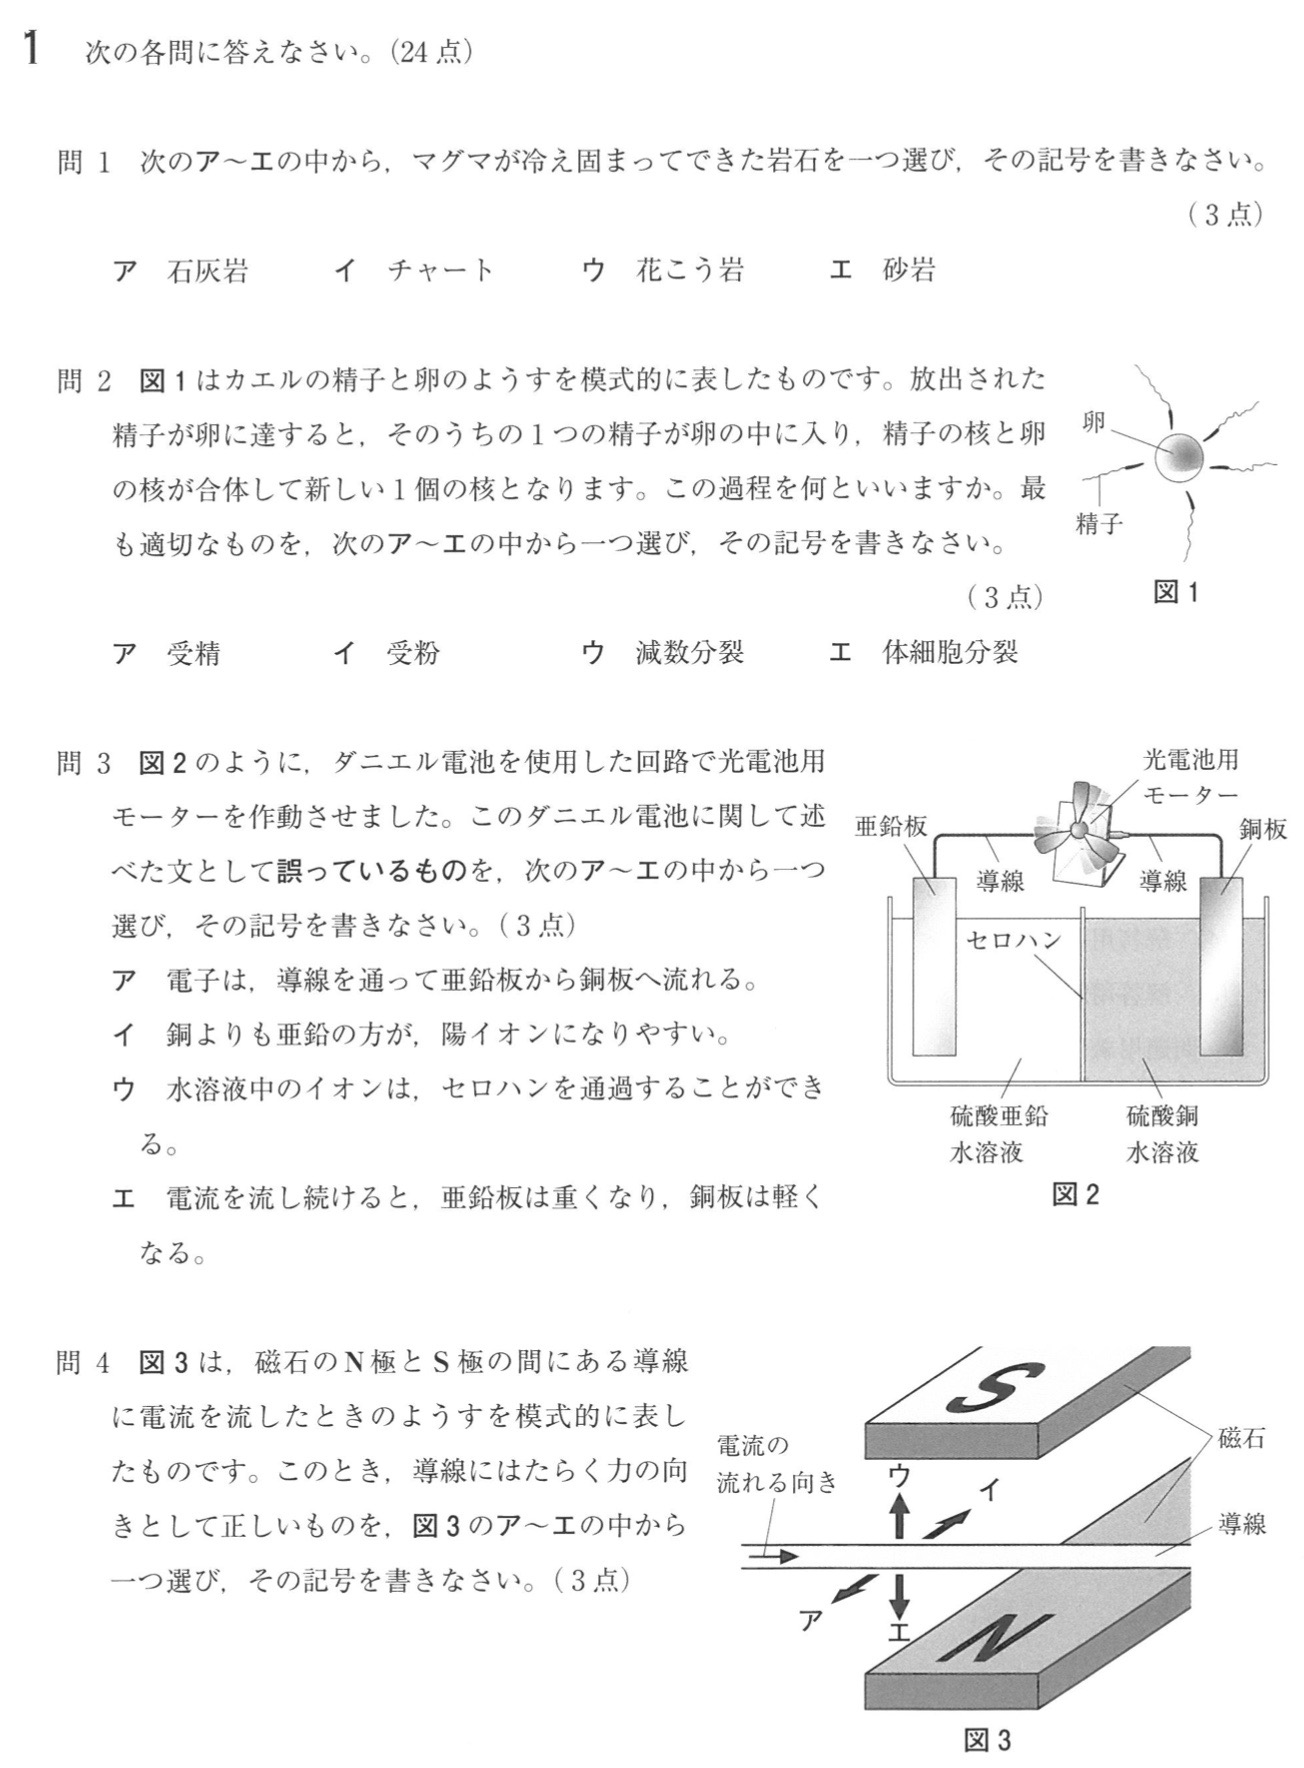 埼玉県公立高校入試理科2022年(令和4年)過去問題